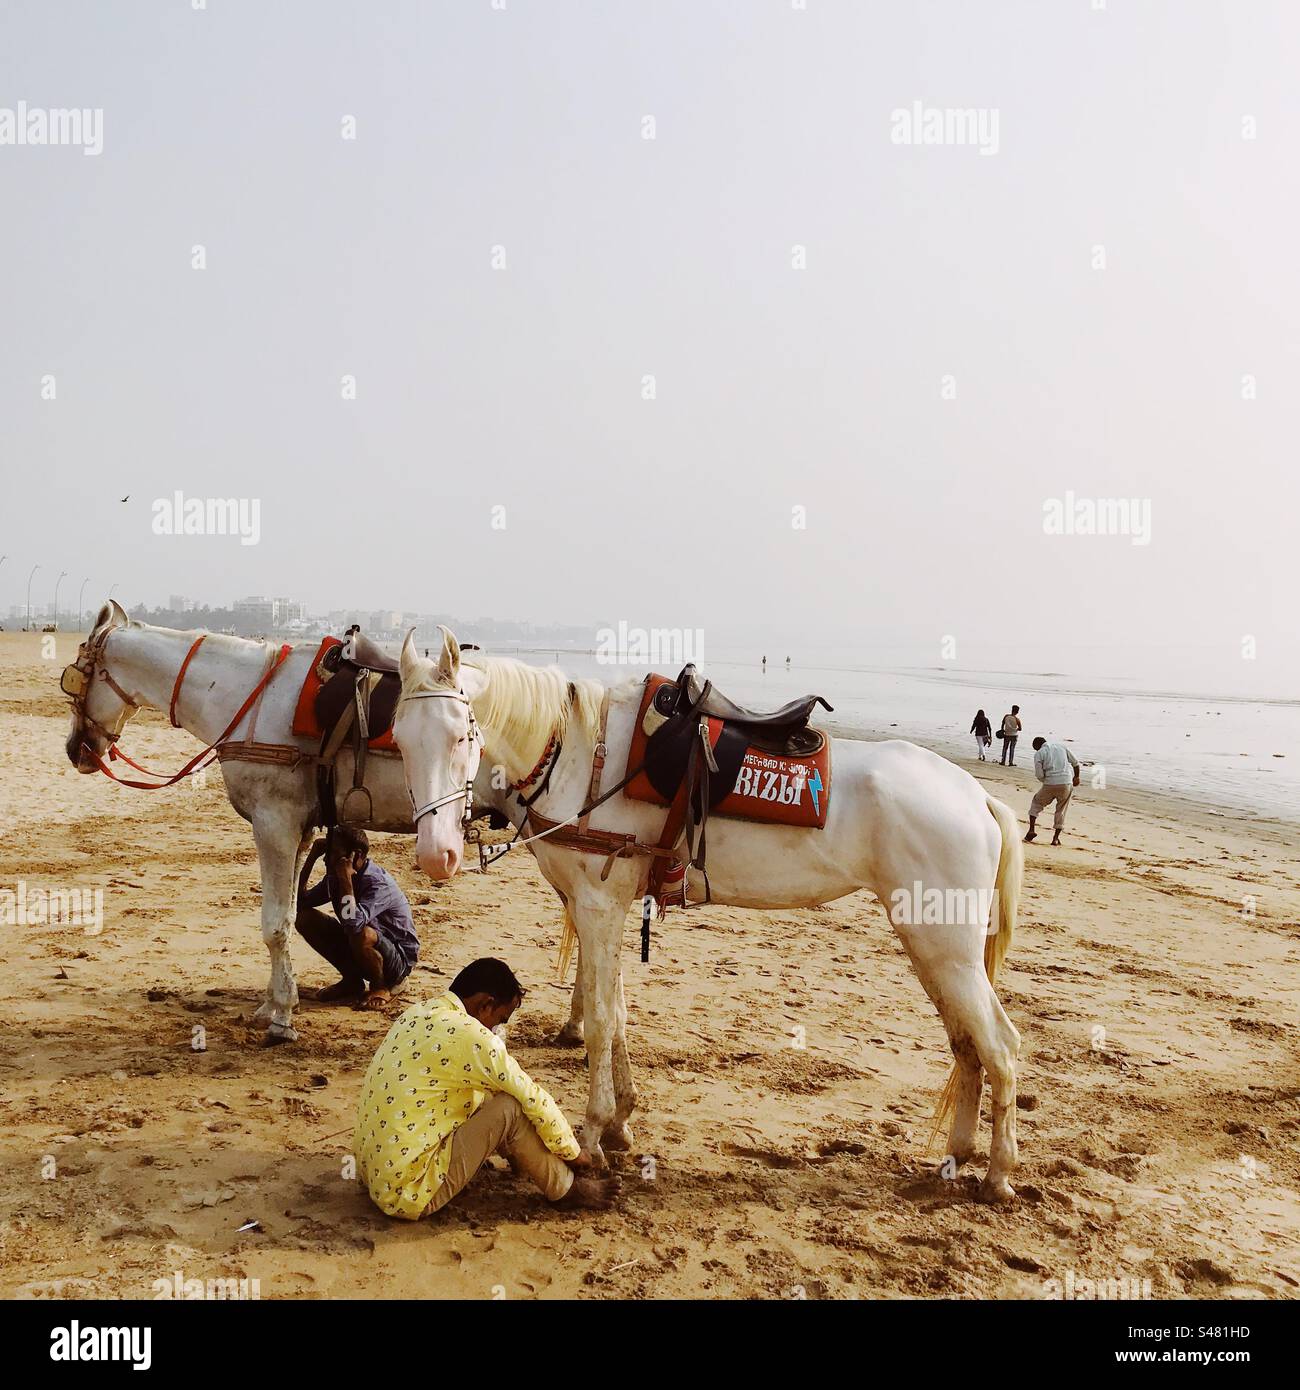 Horses on a beach Stock Photo